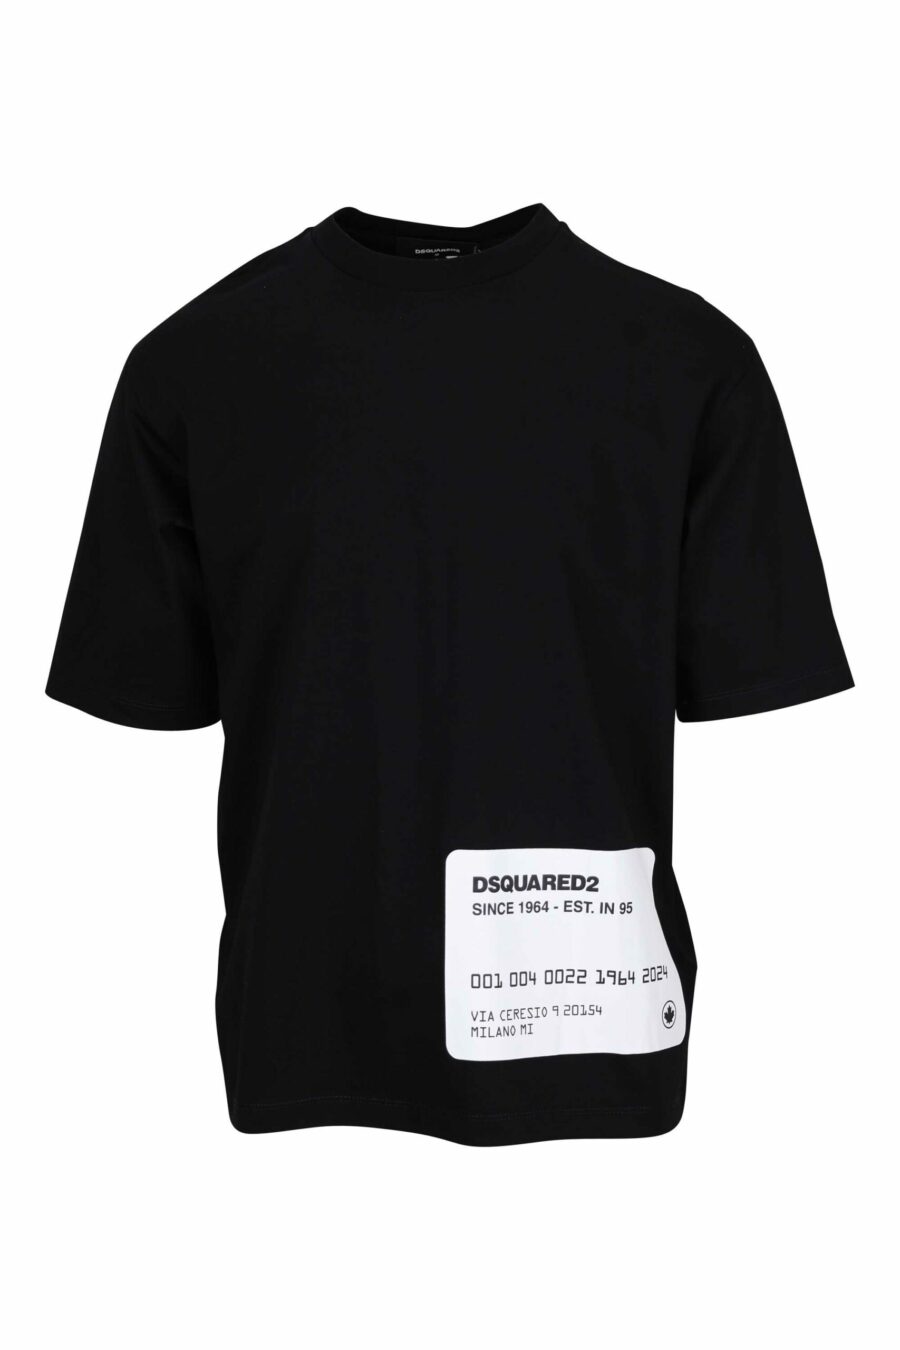 T-shirt preta de tamanho grande com o logótipo do cartão de crédito por baixo - 8054148265618